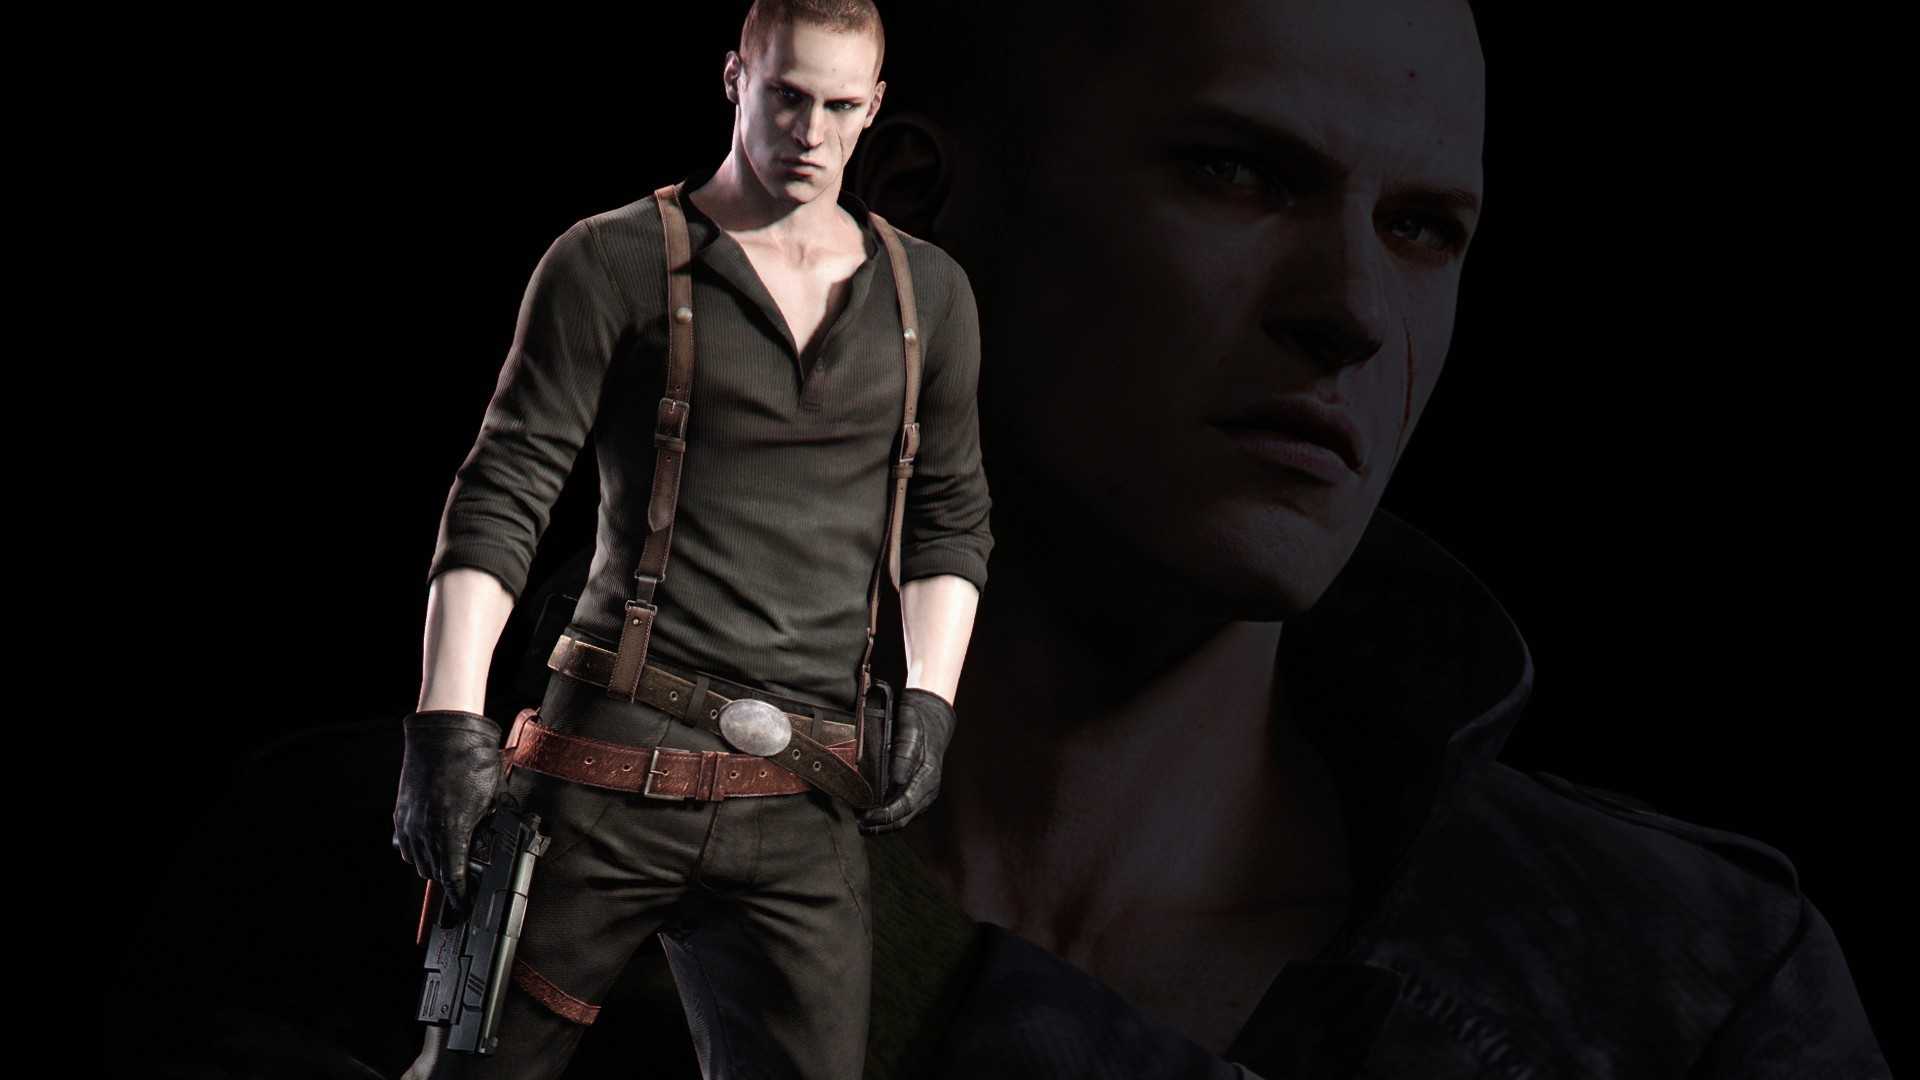 Прохождение игры Resident Evil 6 на 100 Кампания 3 за Джейка Мюллера Тактика против боссов, все секретные эмблемы, все достижения